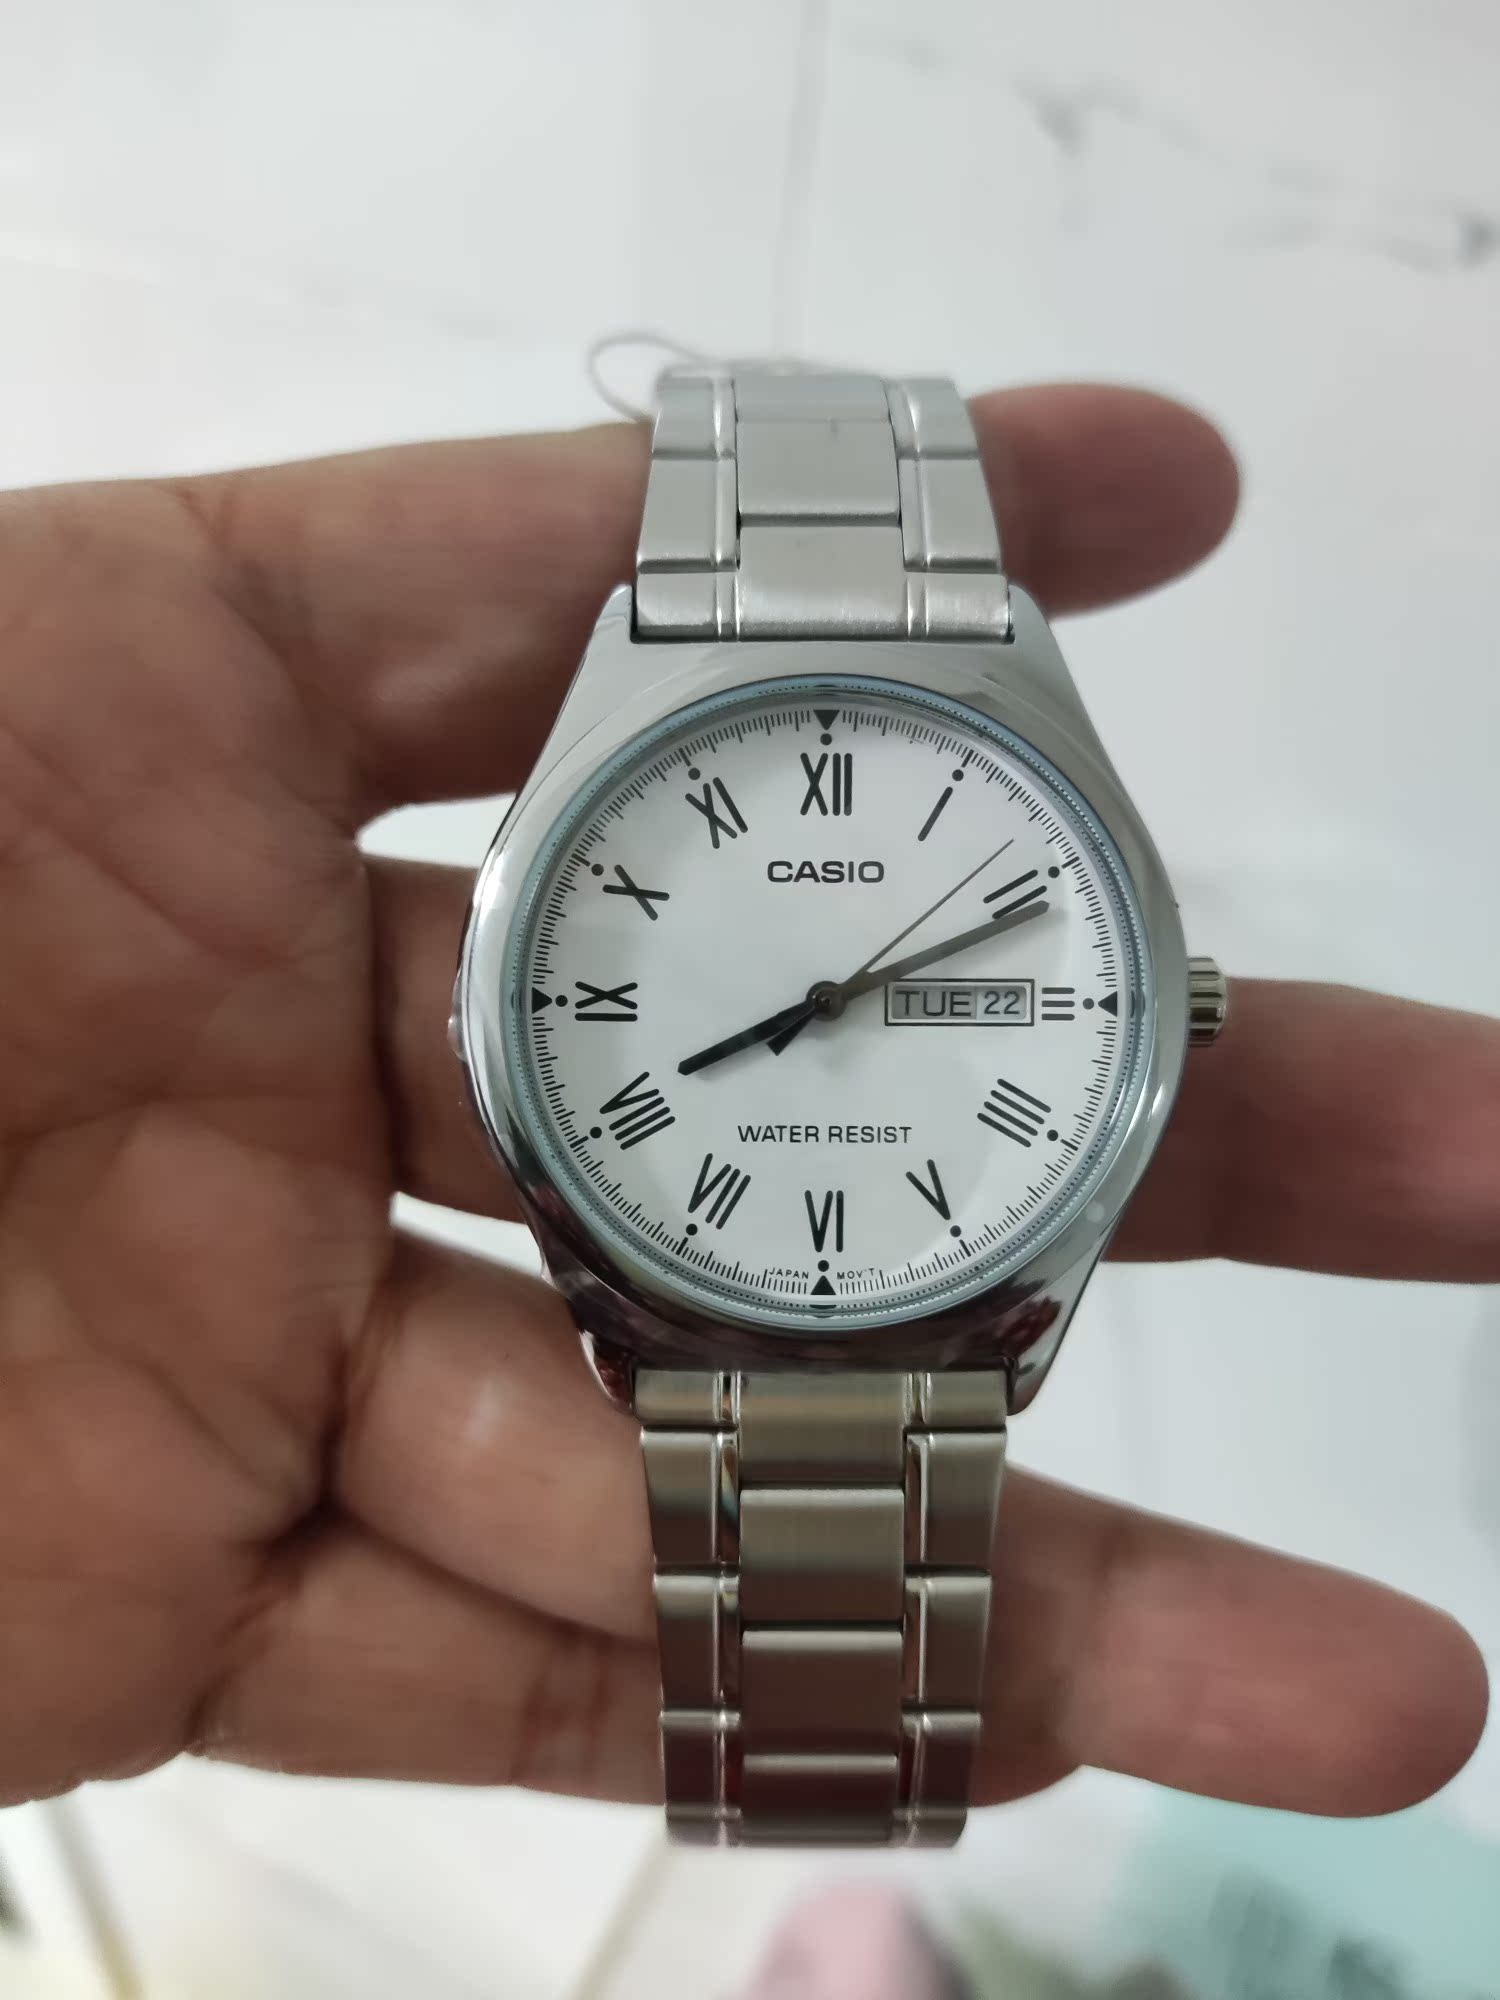 スーパーセール期間限定 腕時計 BAROQUE 腕時計(アナログ) - xenostraining.gr